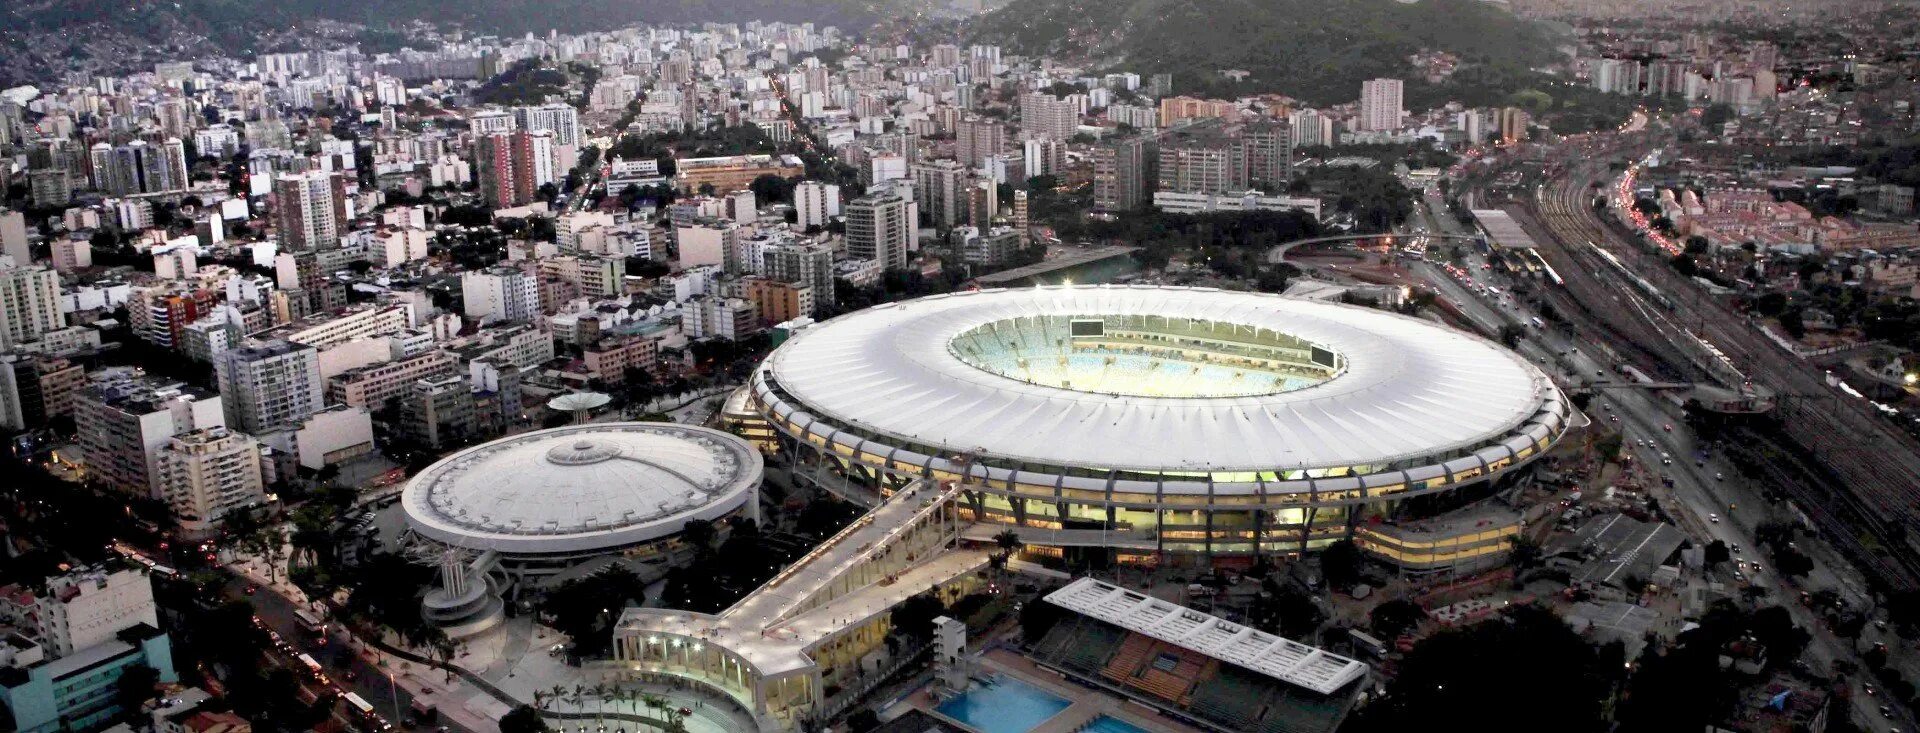 Маракана Рио-де-Жанейро. Стадион Рио де Жанейро. Стадион Рио де Жанейро Маракана 2000 год. Футбольный стадион в Рио де Жанейро.